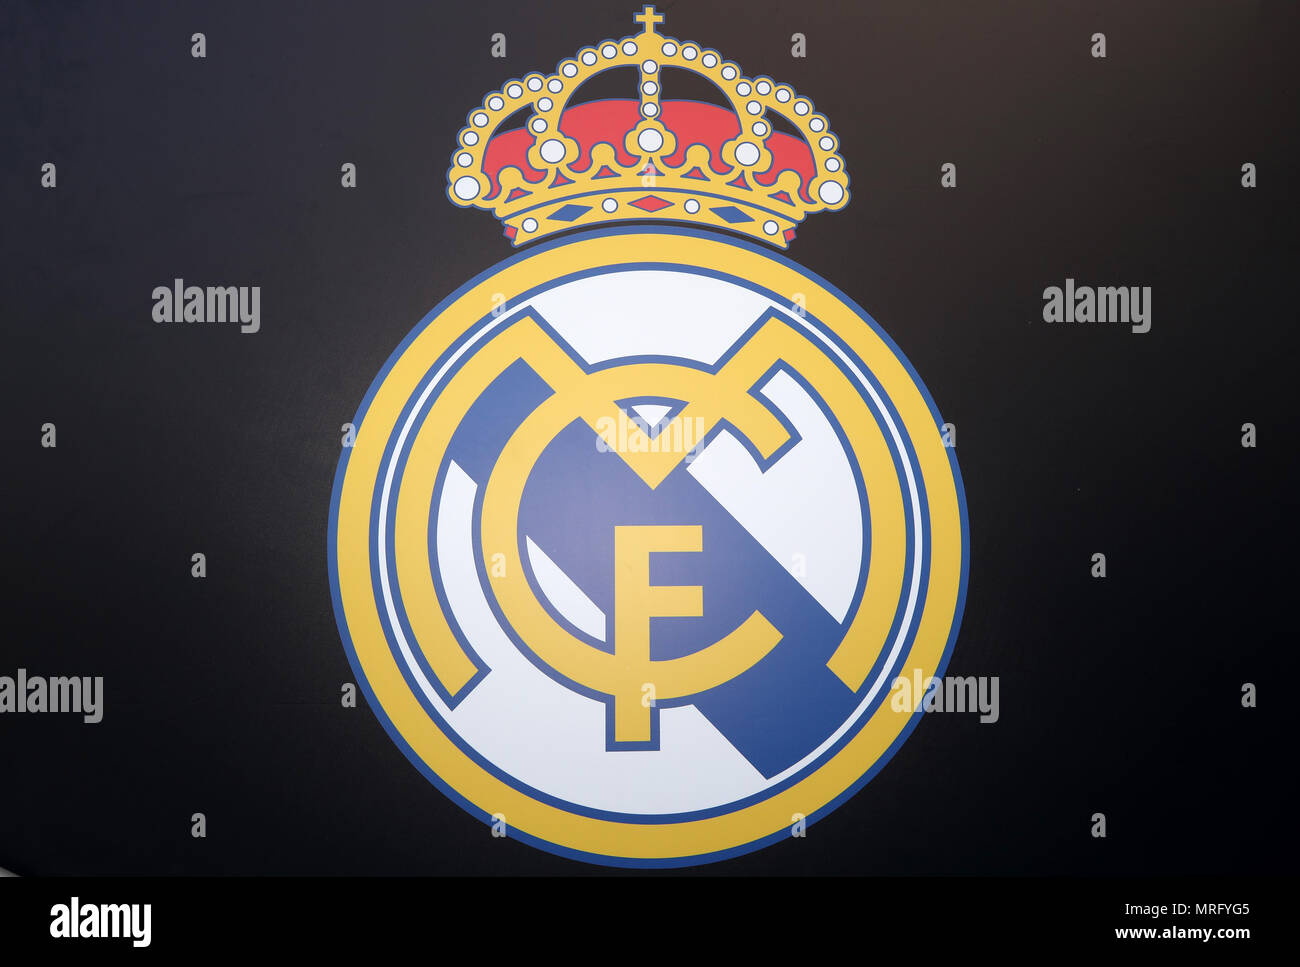 Real Madrid Vectores, Iconos, Gráficos y Fondos para Descargar Gratis